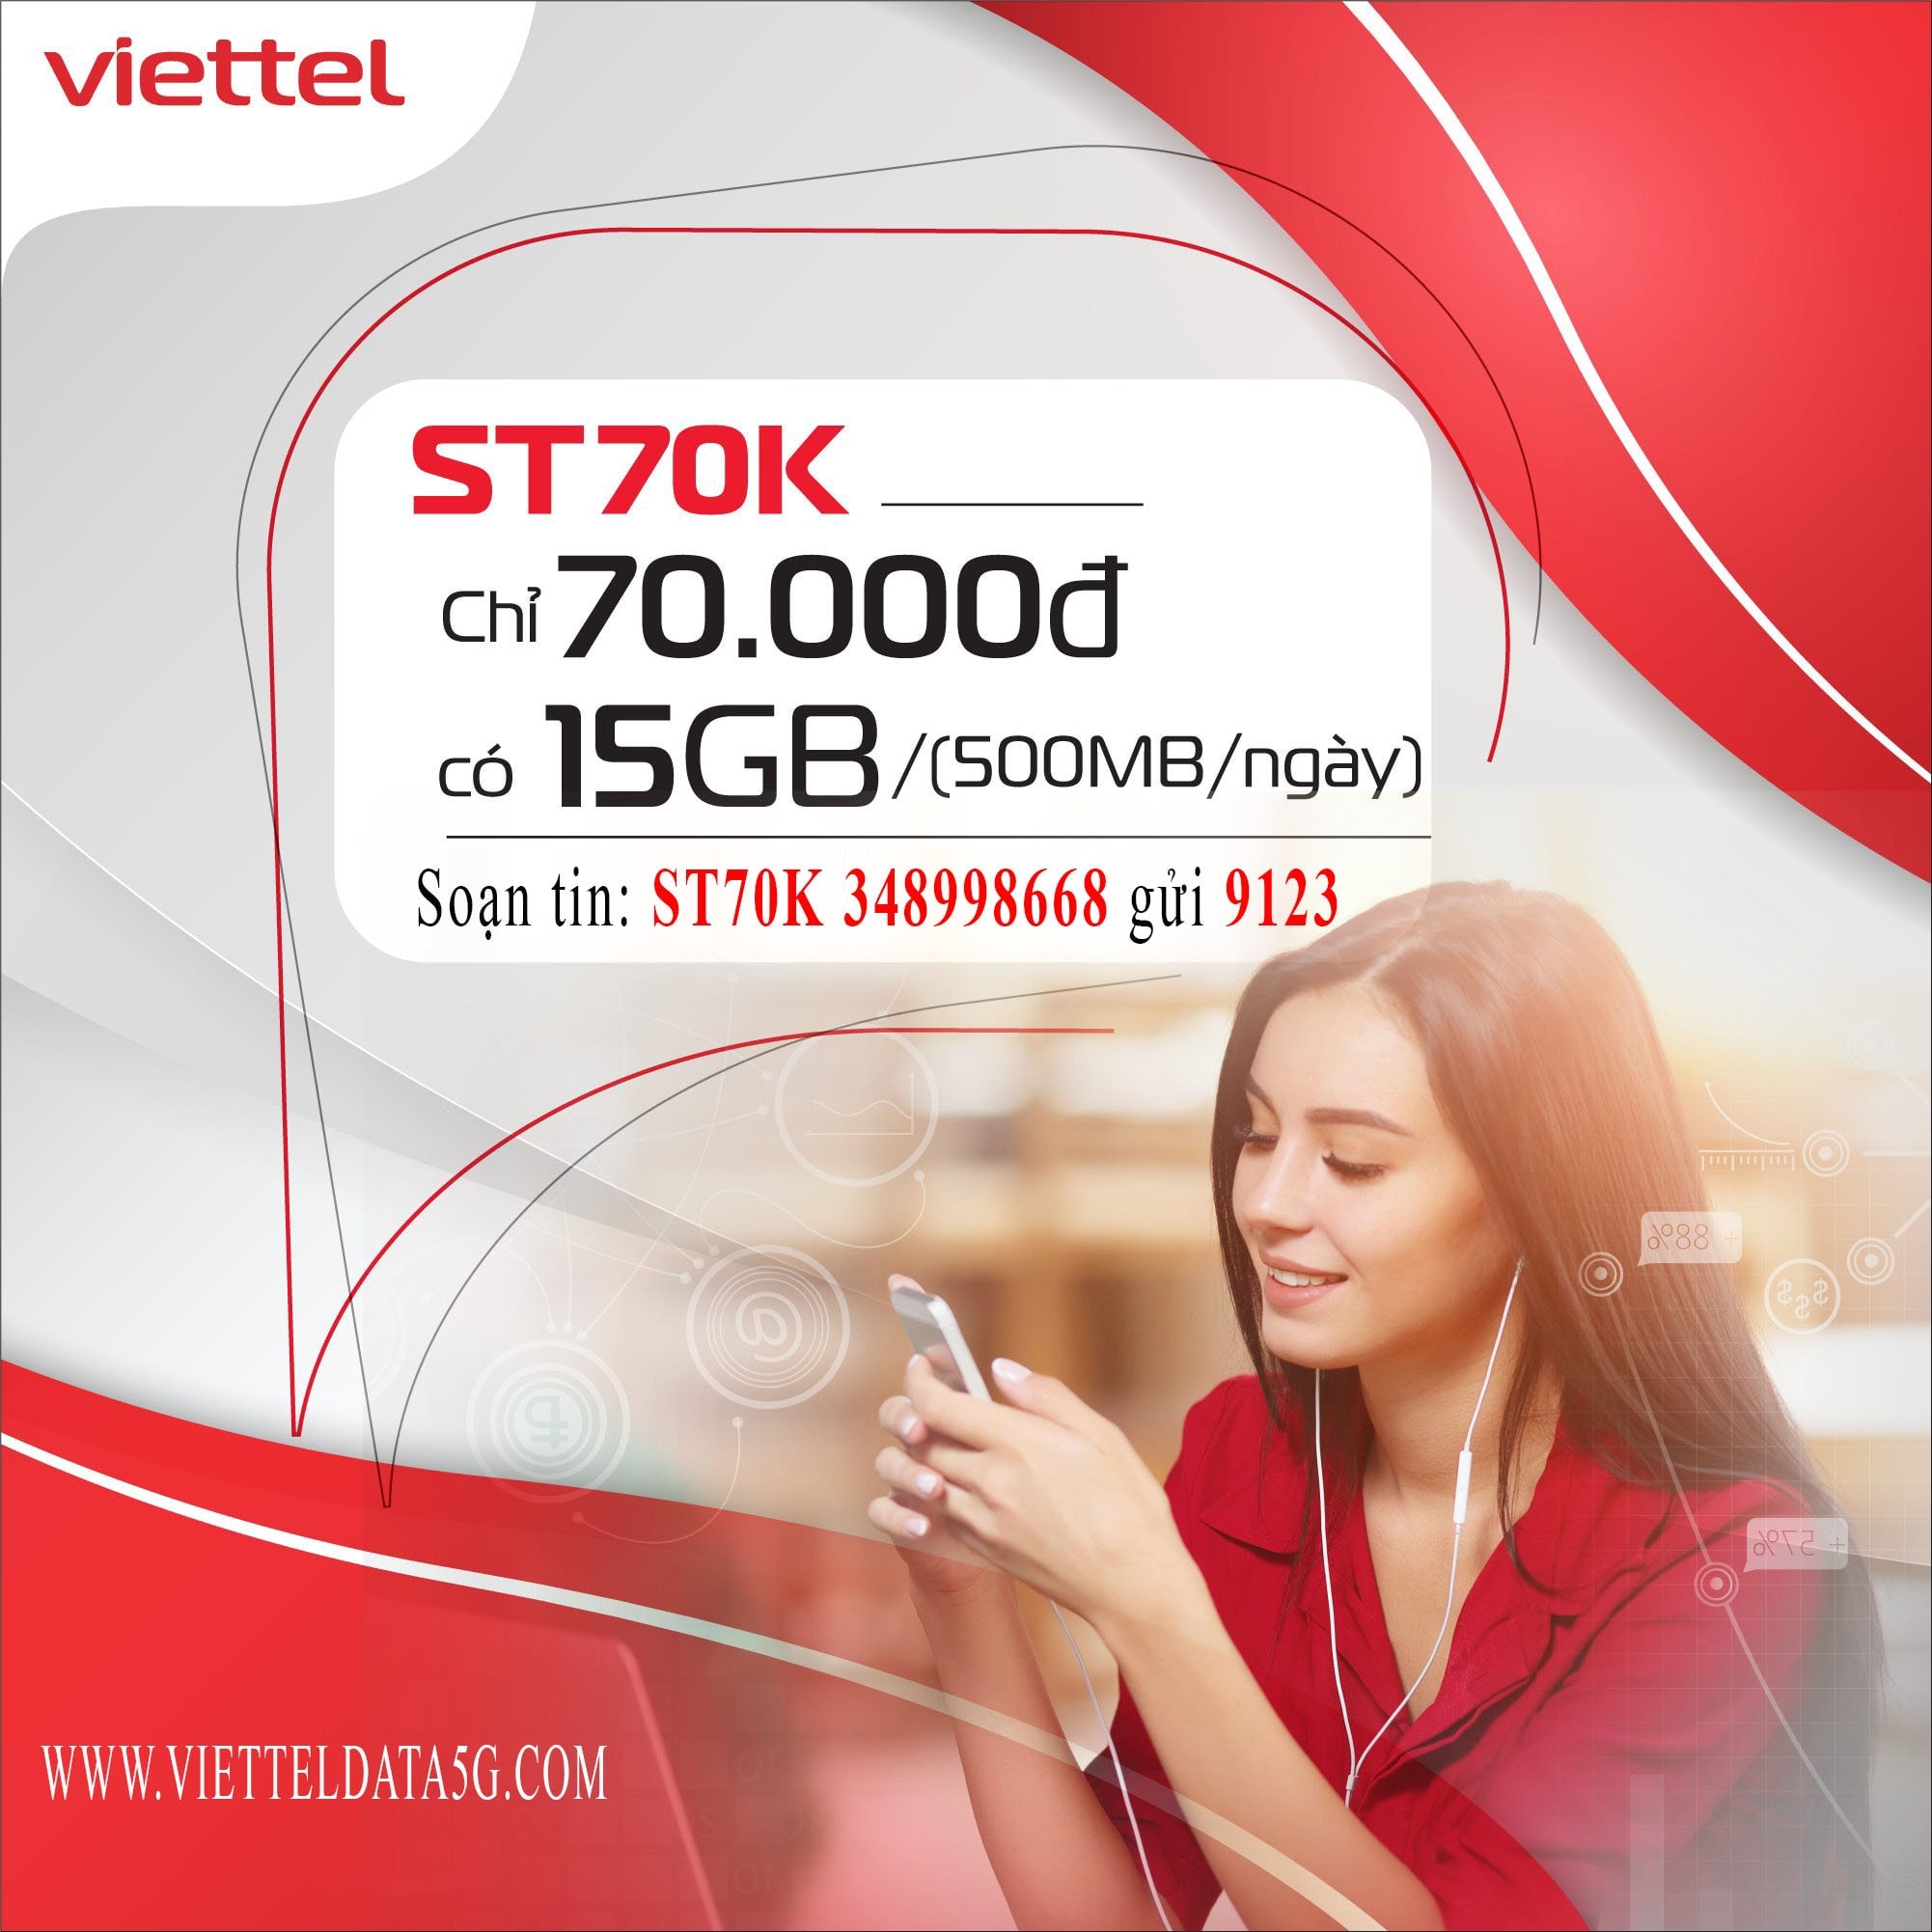 Đăng ký ST70K Viettel nhận ngay 15gb data truy cập mạng internet và truy cập miễn phí ứng dụng tiktok.